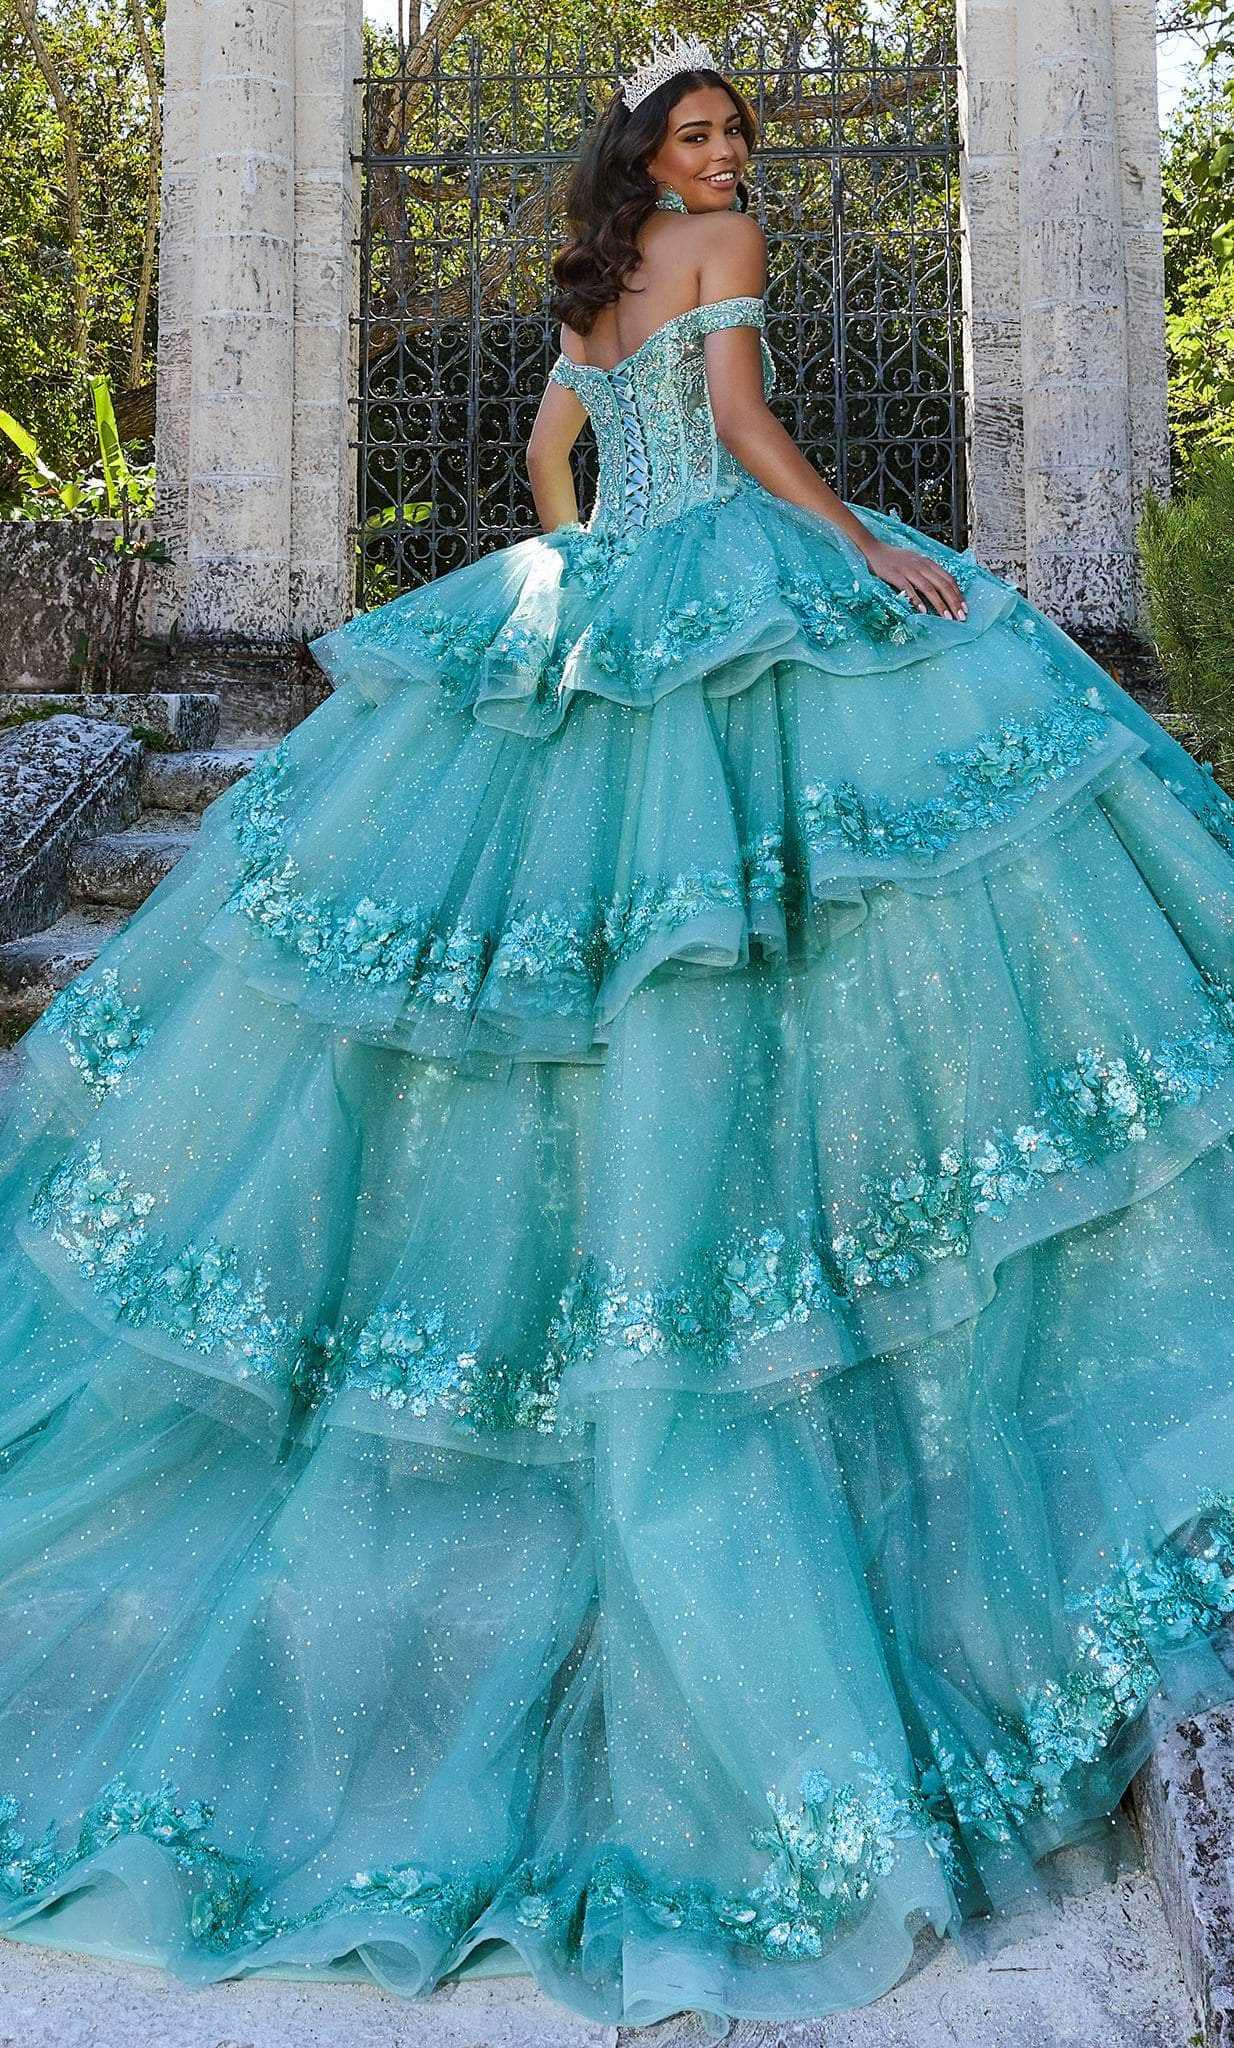 Princesa by Ariana Vara, Princesa by Ariana Vara PR30131 - Off Shoulder Quinceanera Gown